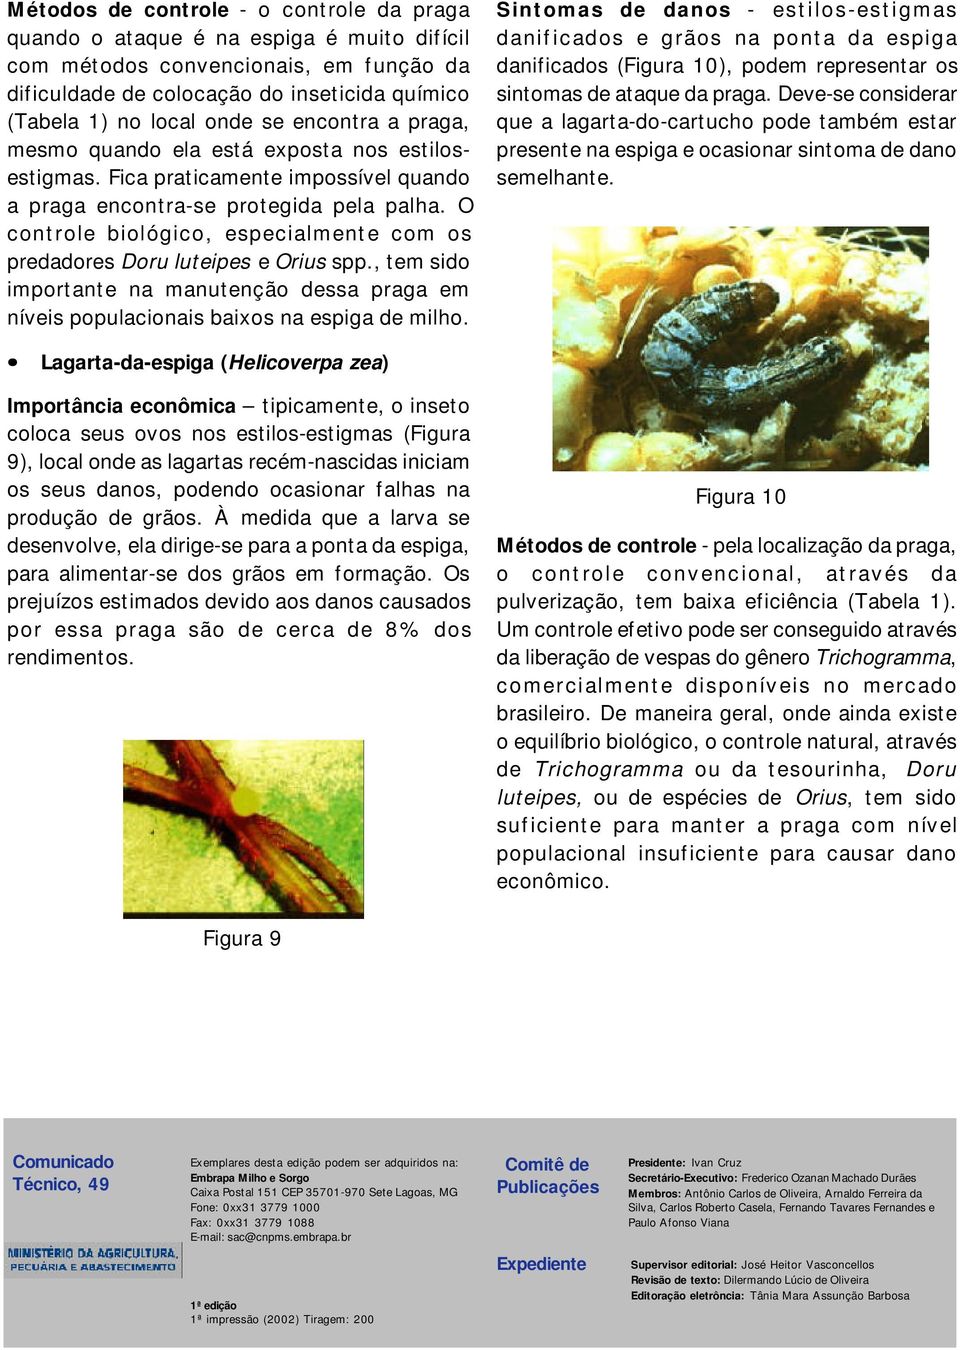 O controle biológico, especialmente com os predadores Doru luteipes e Orius spp., tem sido importante na manutenção dessa praga em níveis populacionais baixos na espiga de milho.